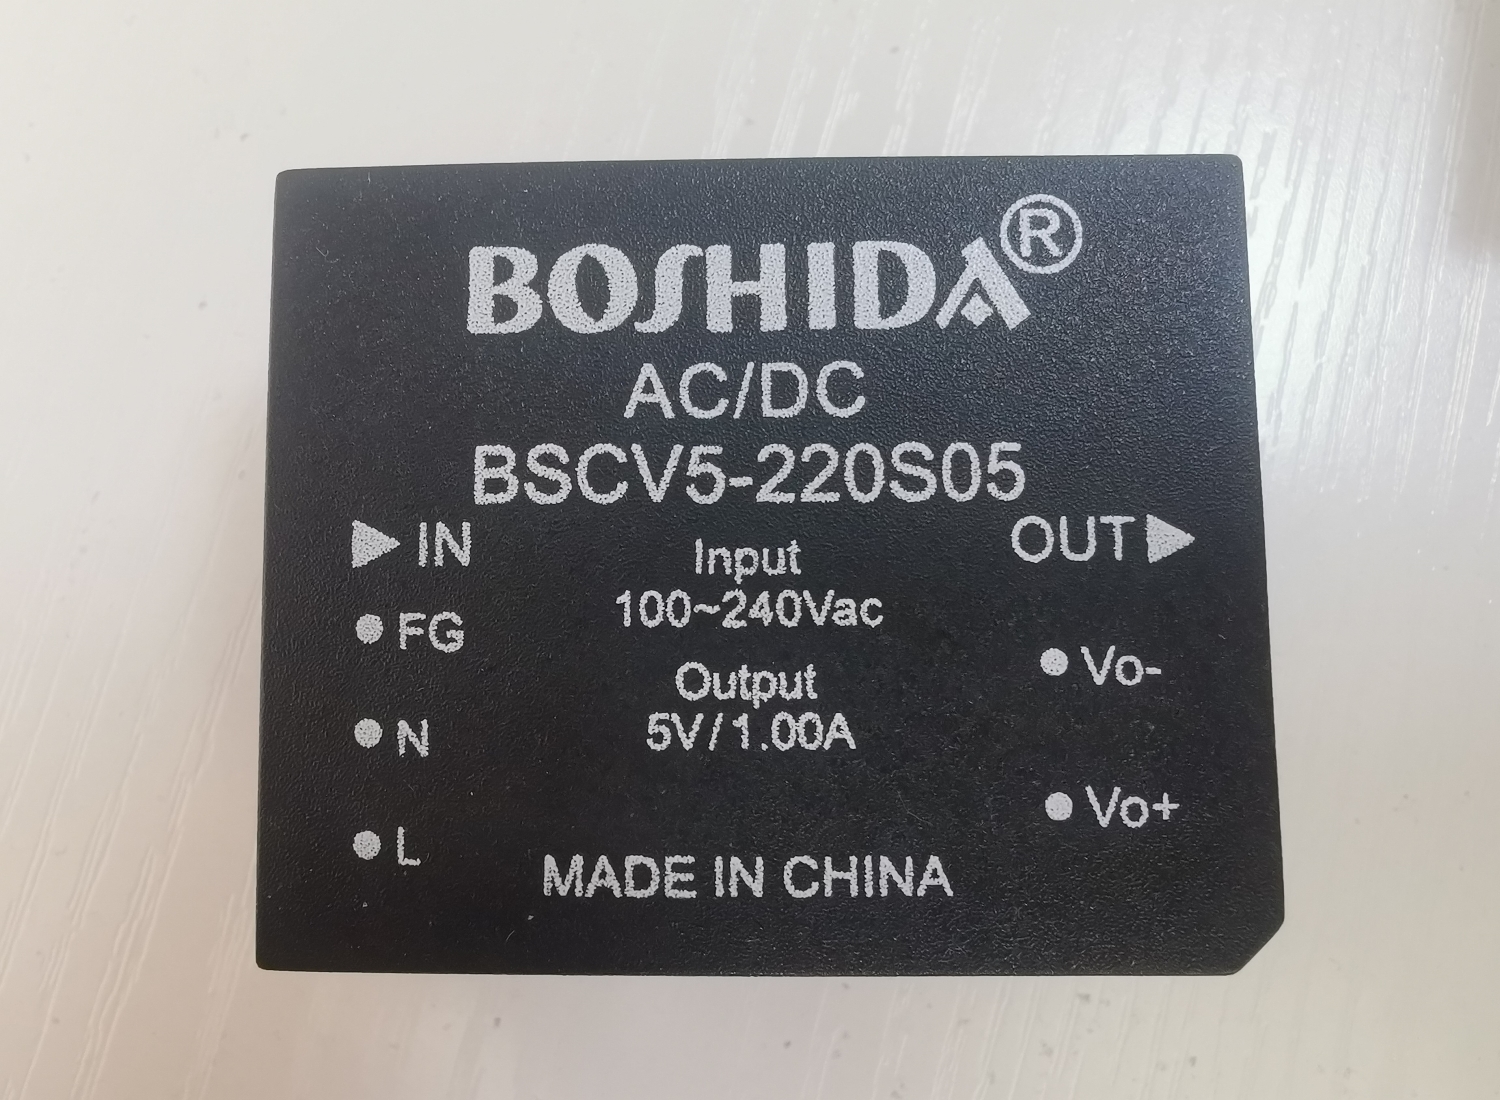 BOSHIDA 三河博电科技 模块电源高低温试验箱测试原理